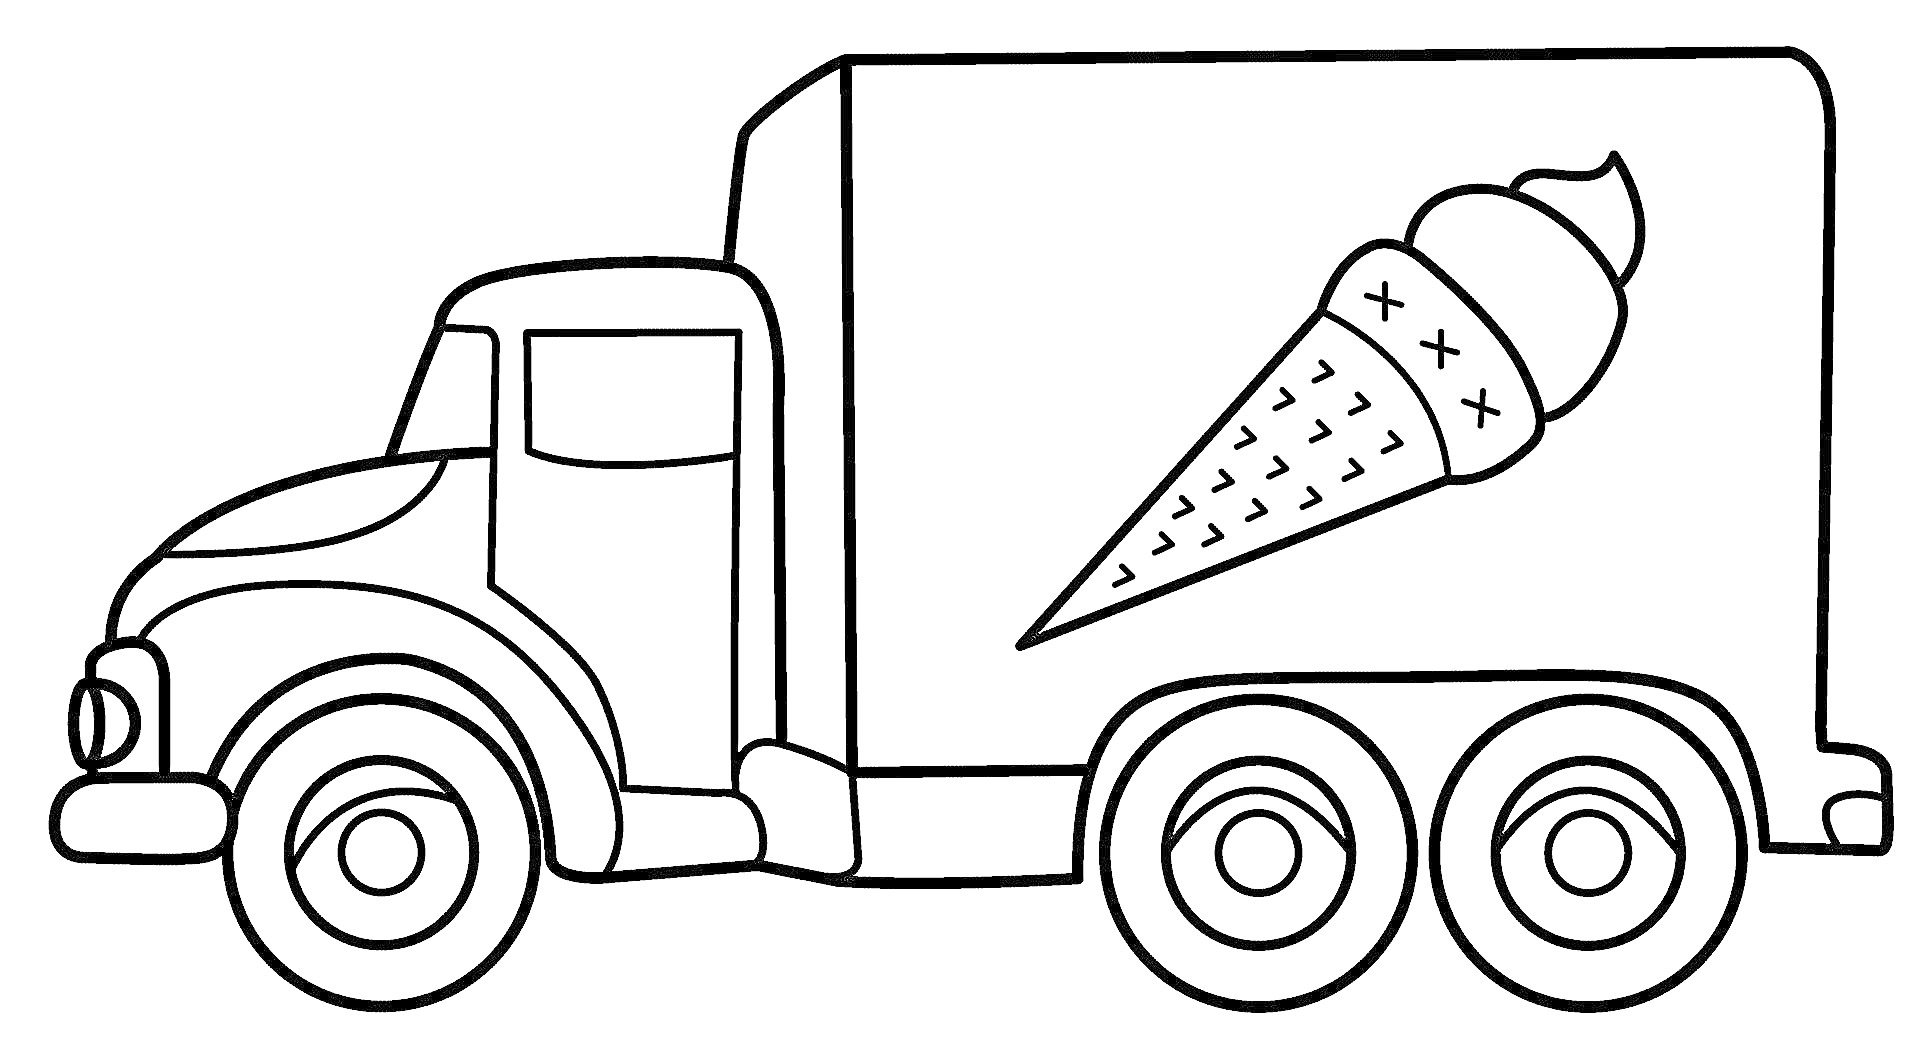 Грузовик с мороженым, грузовик с кабиной и кузовом, мороженое нарисовано на кузове